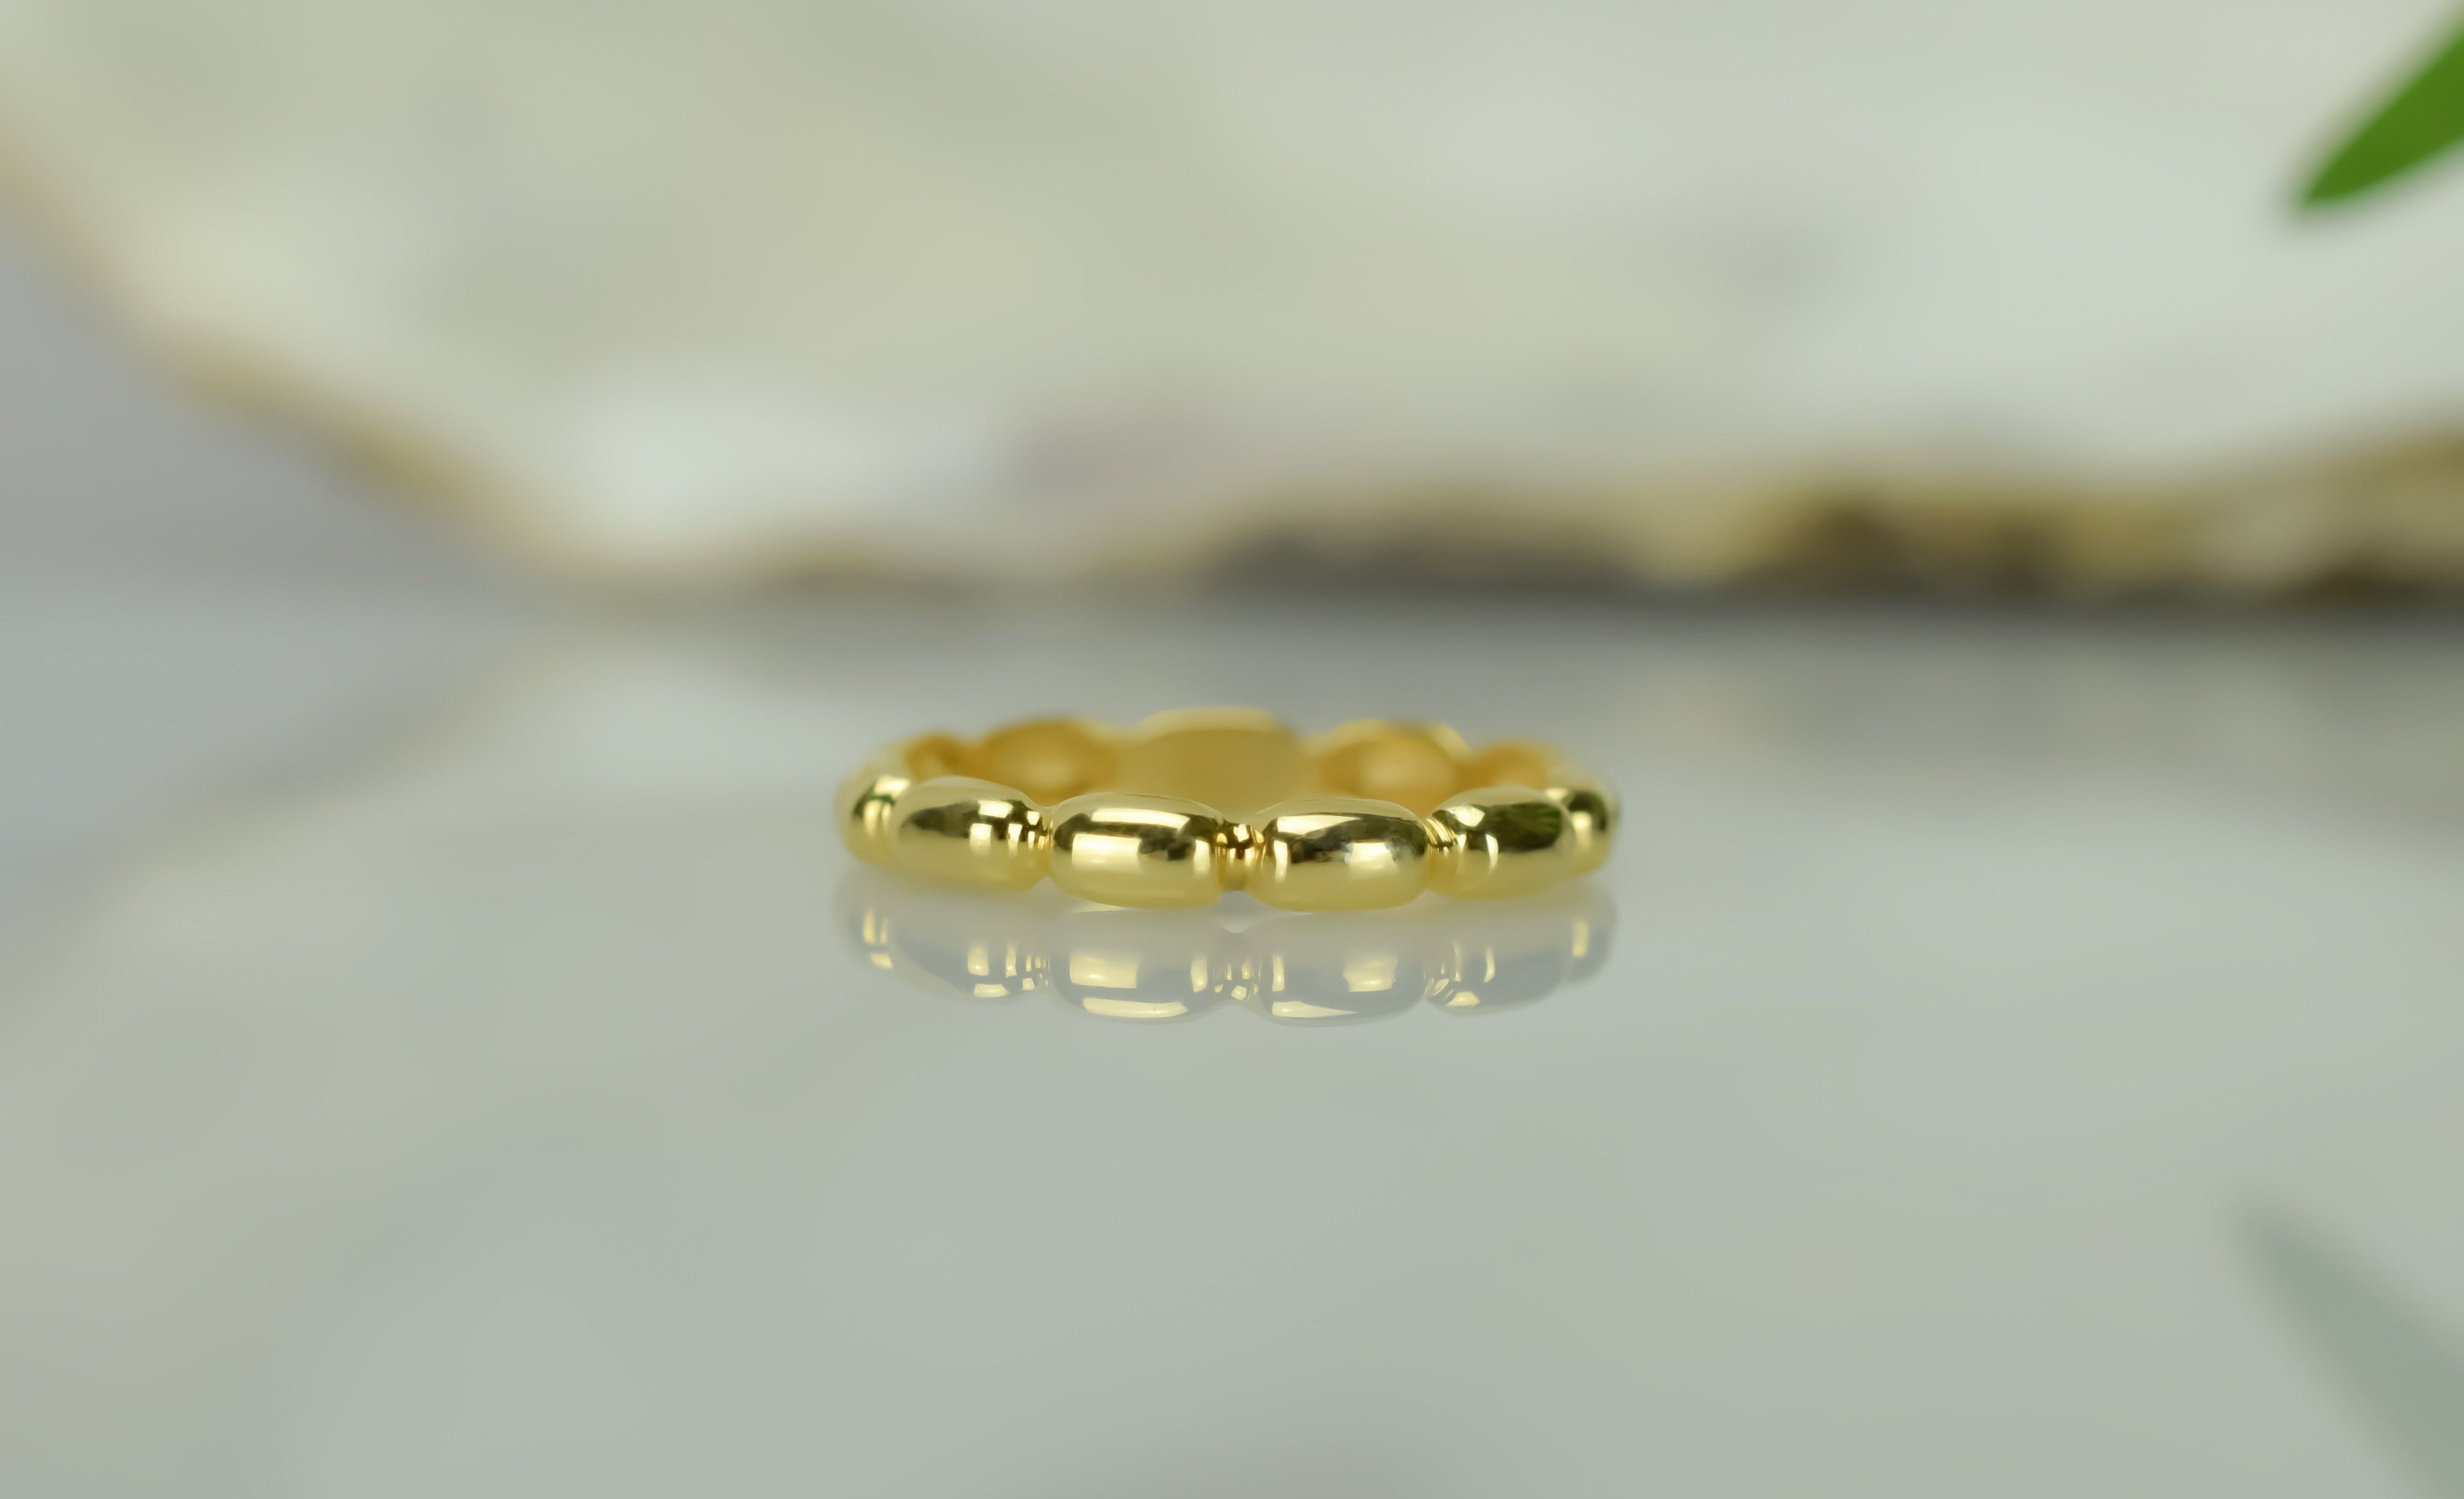 Balkjes ring, ovale ring goud, 14k gouden ring, stapelring goud, aanschuifring goud, unieke ring goud, balkjes ring 14k, 14k damesring, 14k sieraden, bemyjewels